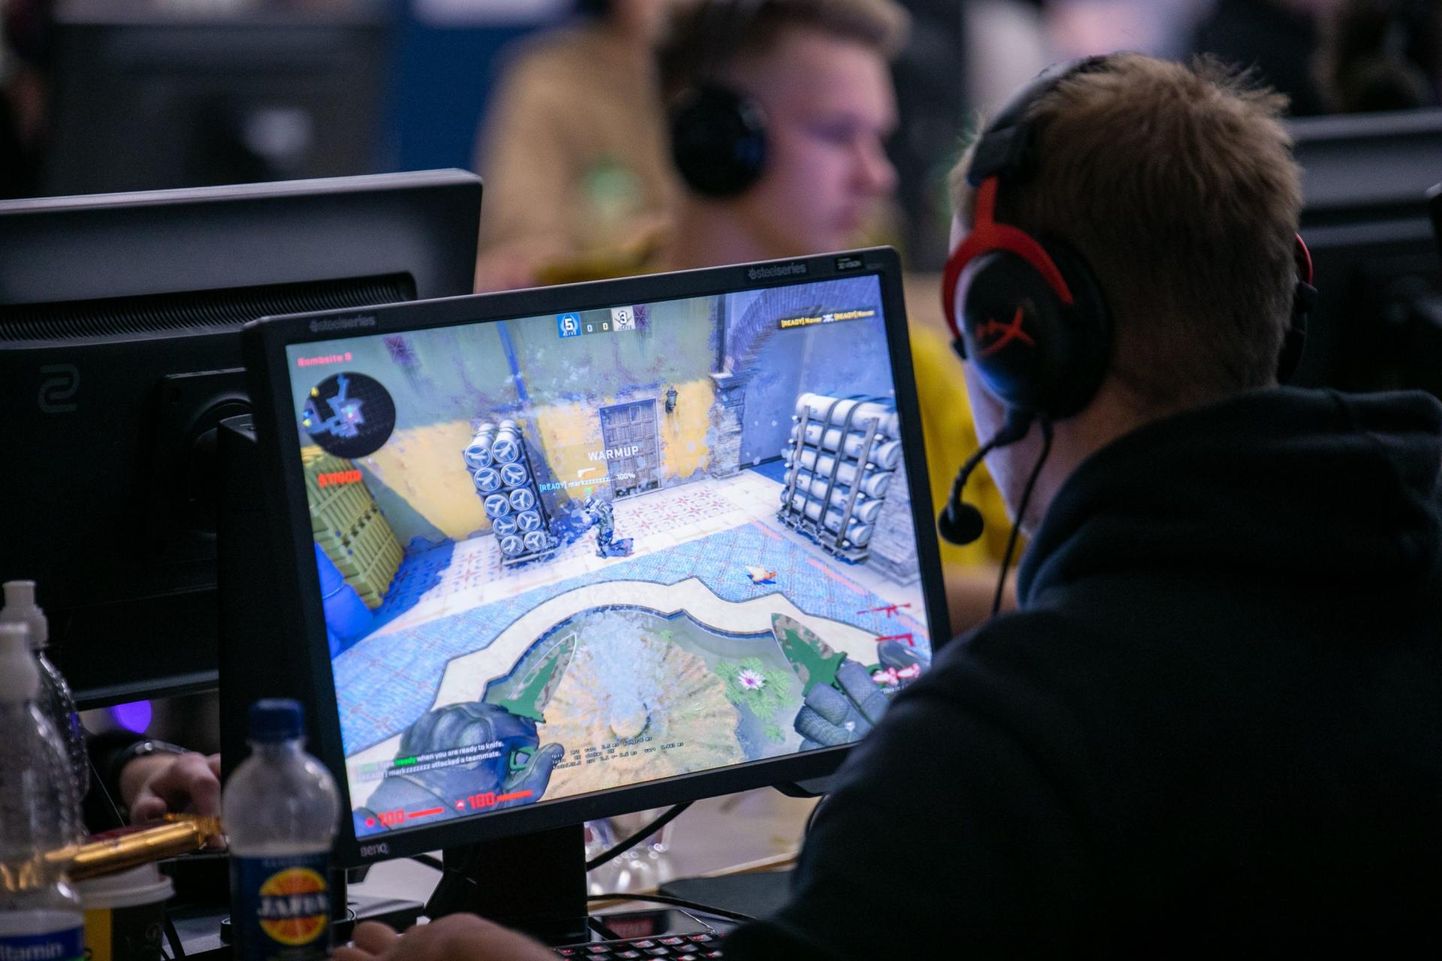 Sel nädalavahetusel võtavad arvutimängurid Rakvere ametikooli aulas omavahel võistkonniti mõõtu ühes populaarseimas sõjamängus – Counter-Strike.